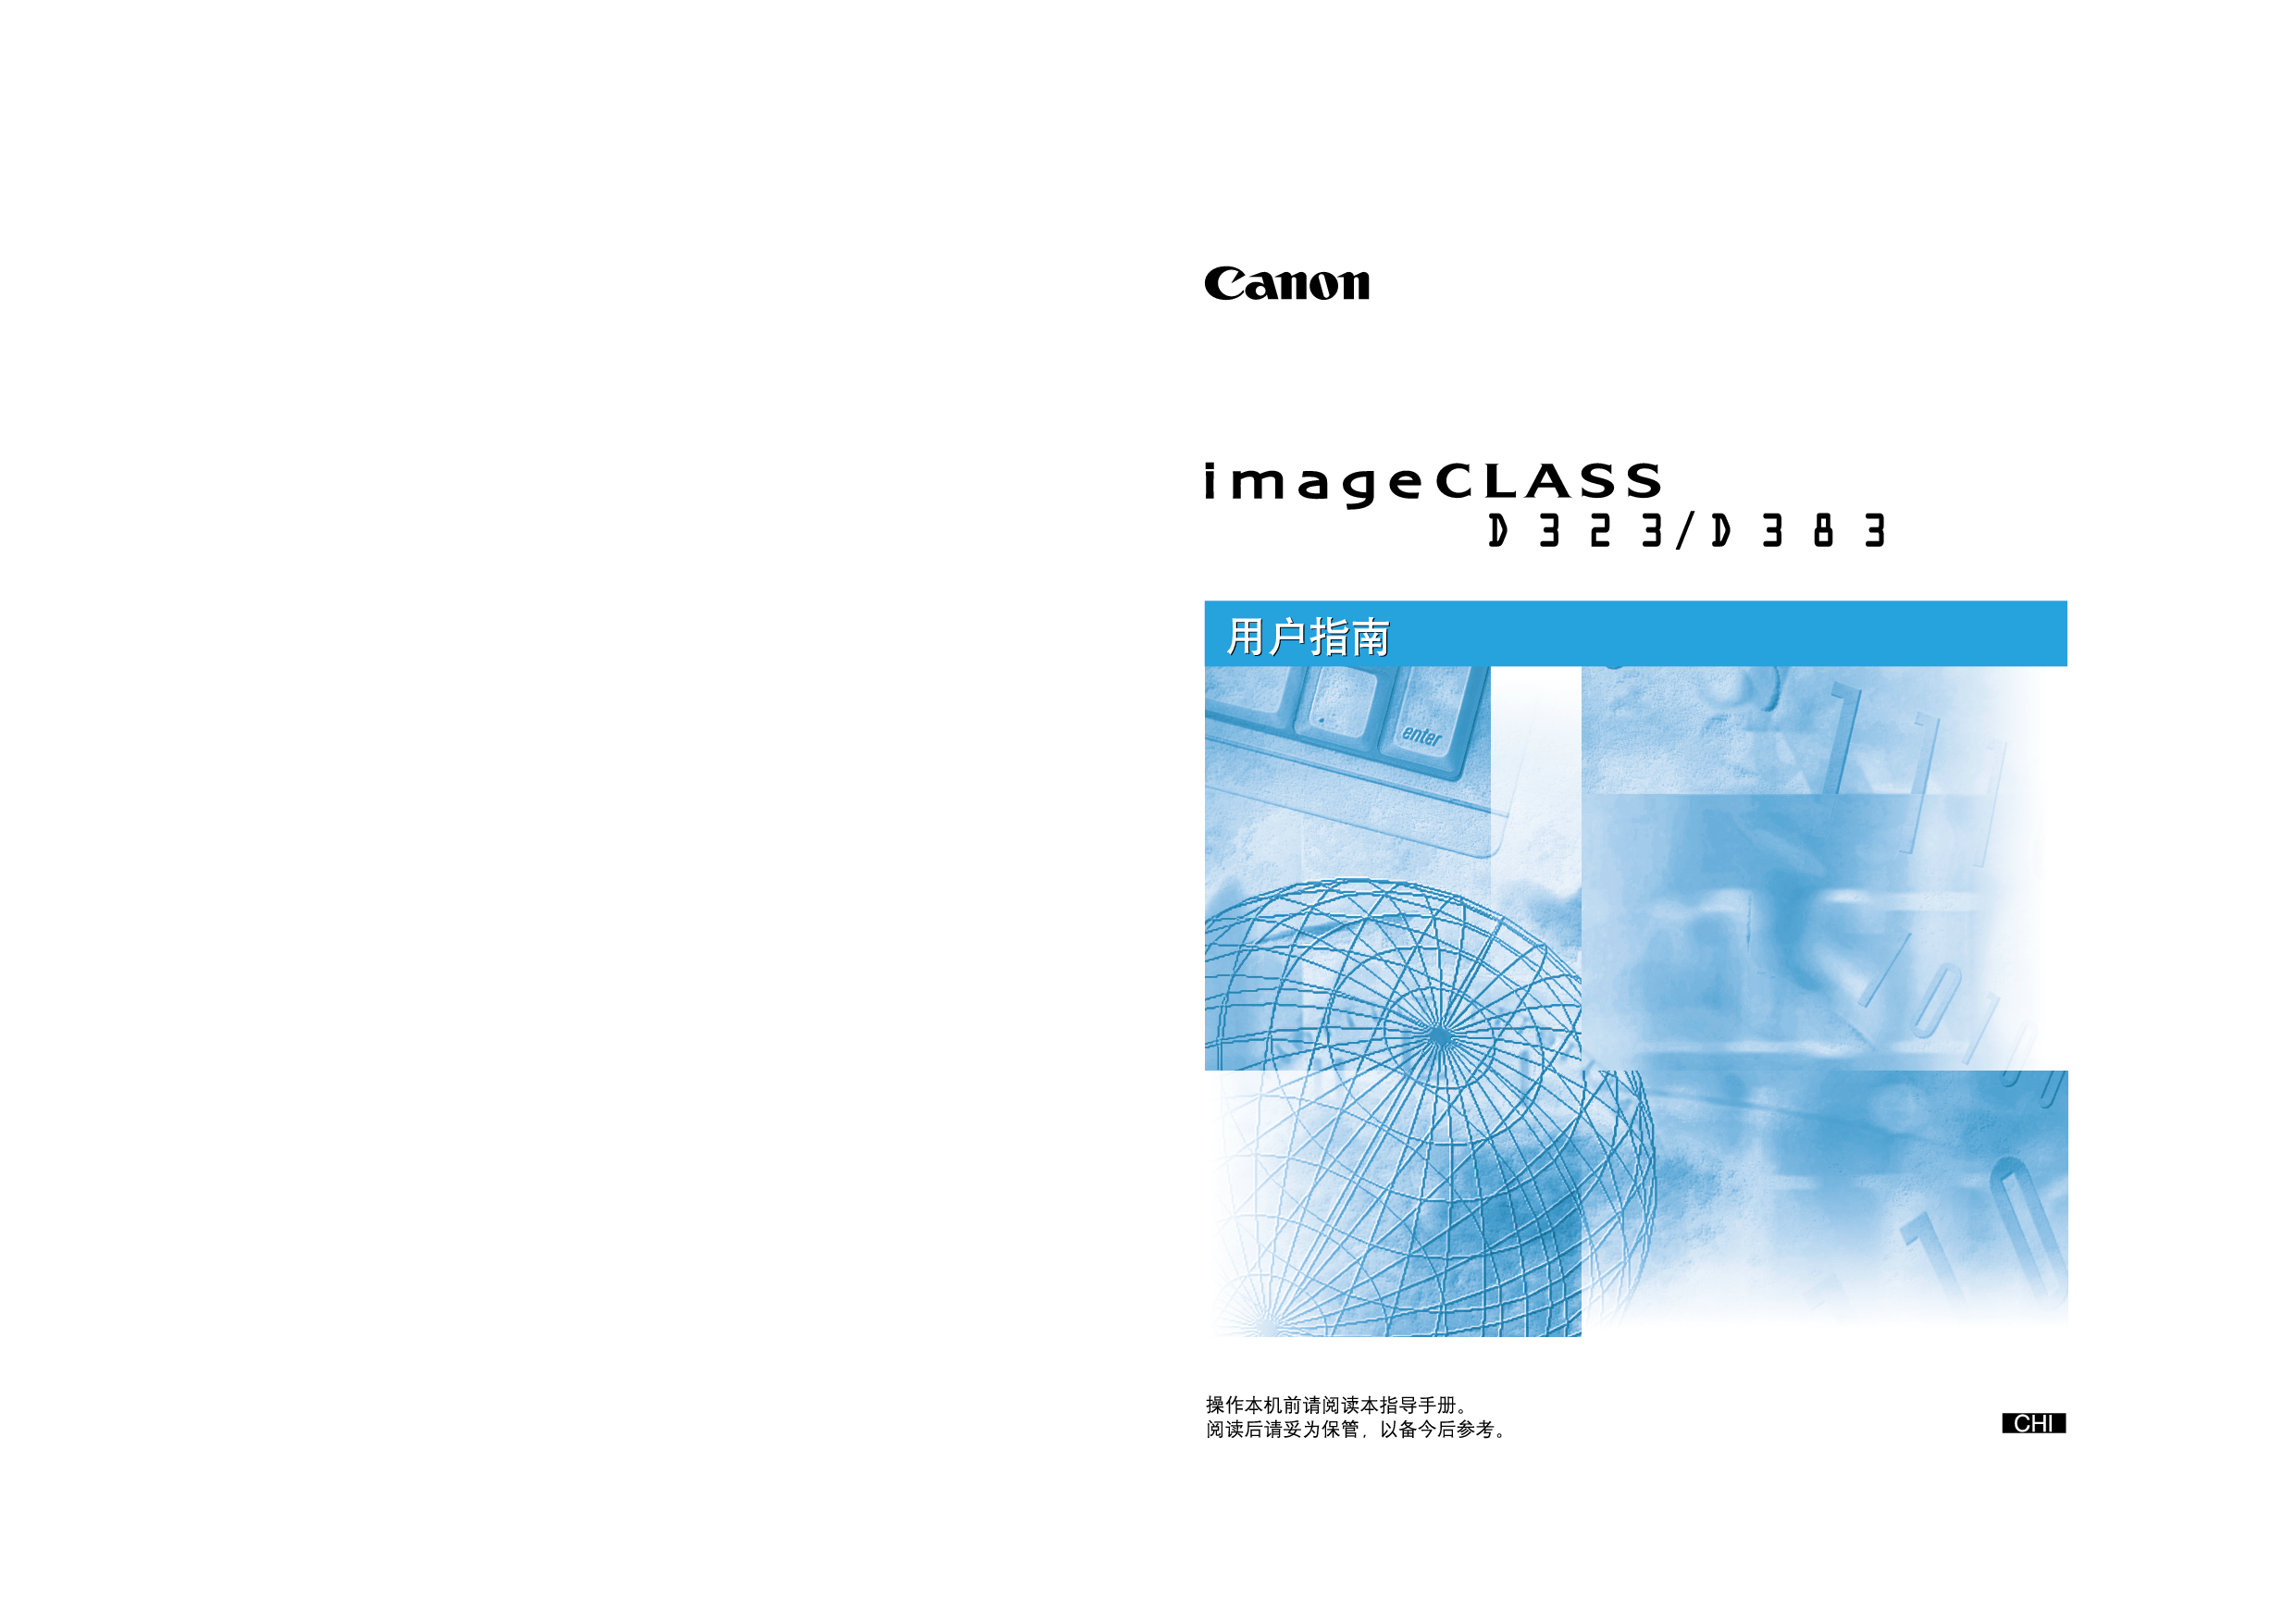 佳能 Canon imageClass D323 用户指南 封面